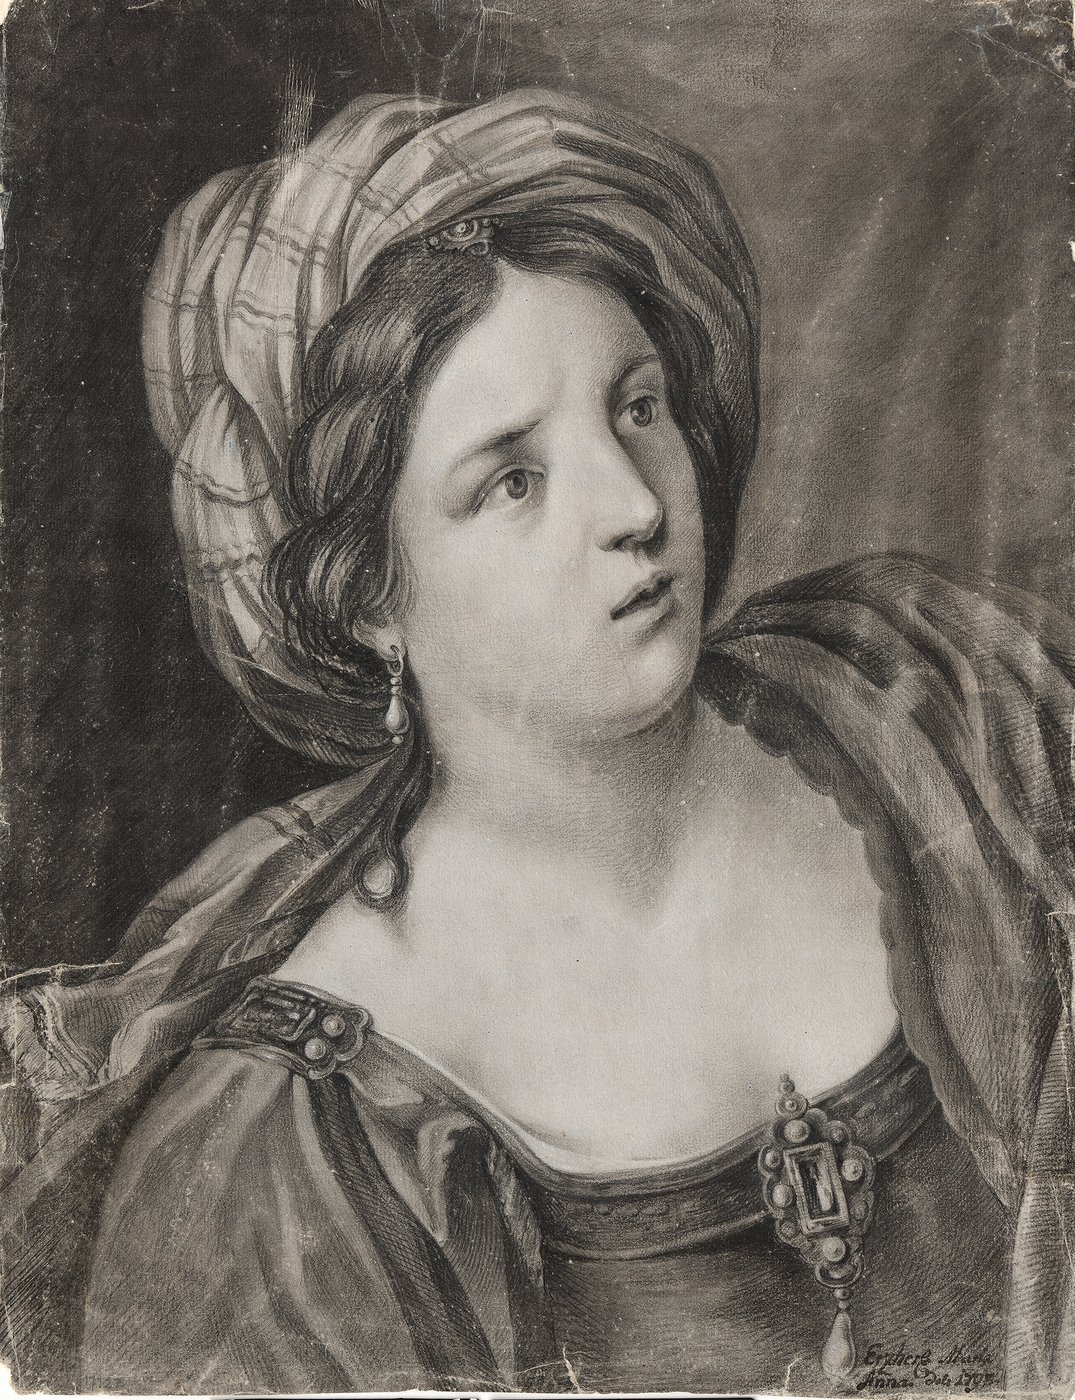 Zeichnung einer Frau mit kostbarem Gewand und Turban, Schmuck am Ausschnitt und auf der rechten Schulter, mit ernstem Blick nach rechts schauend. 